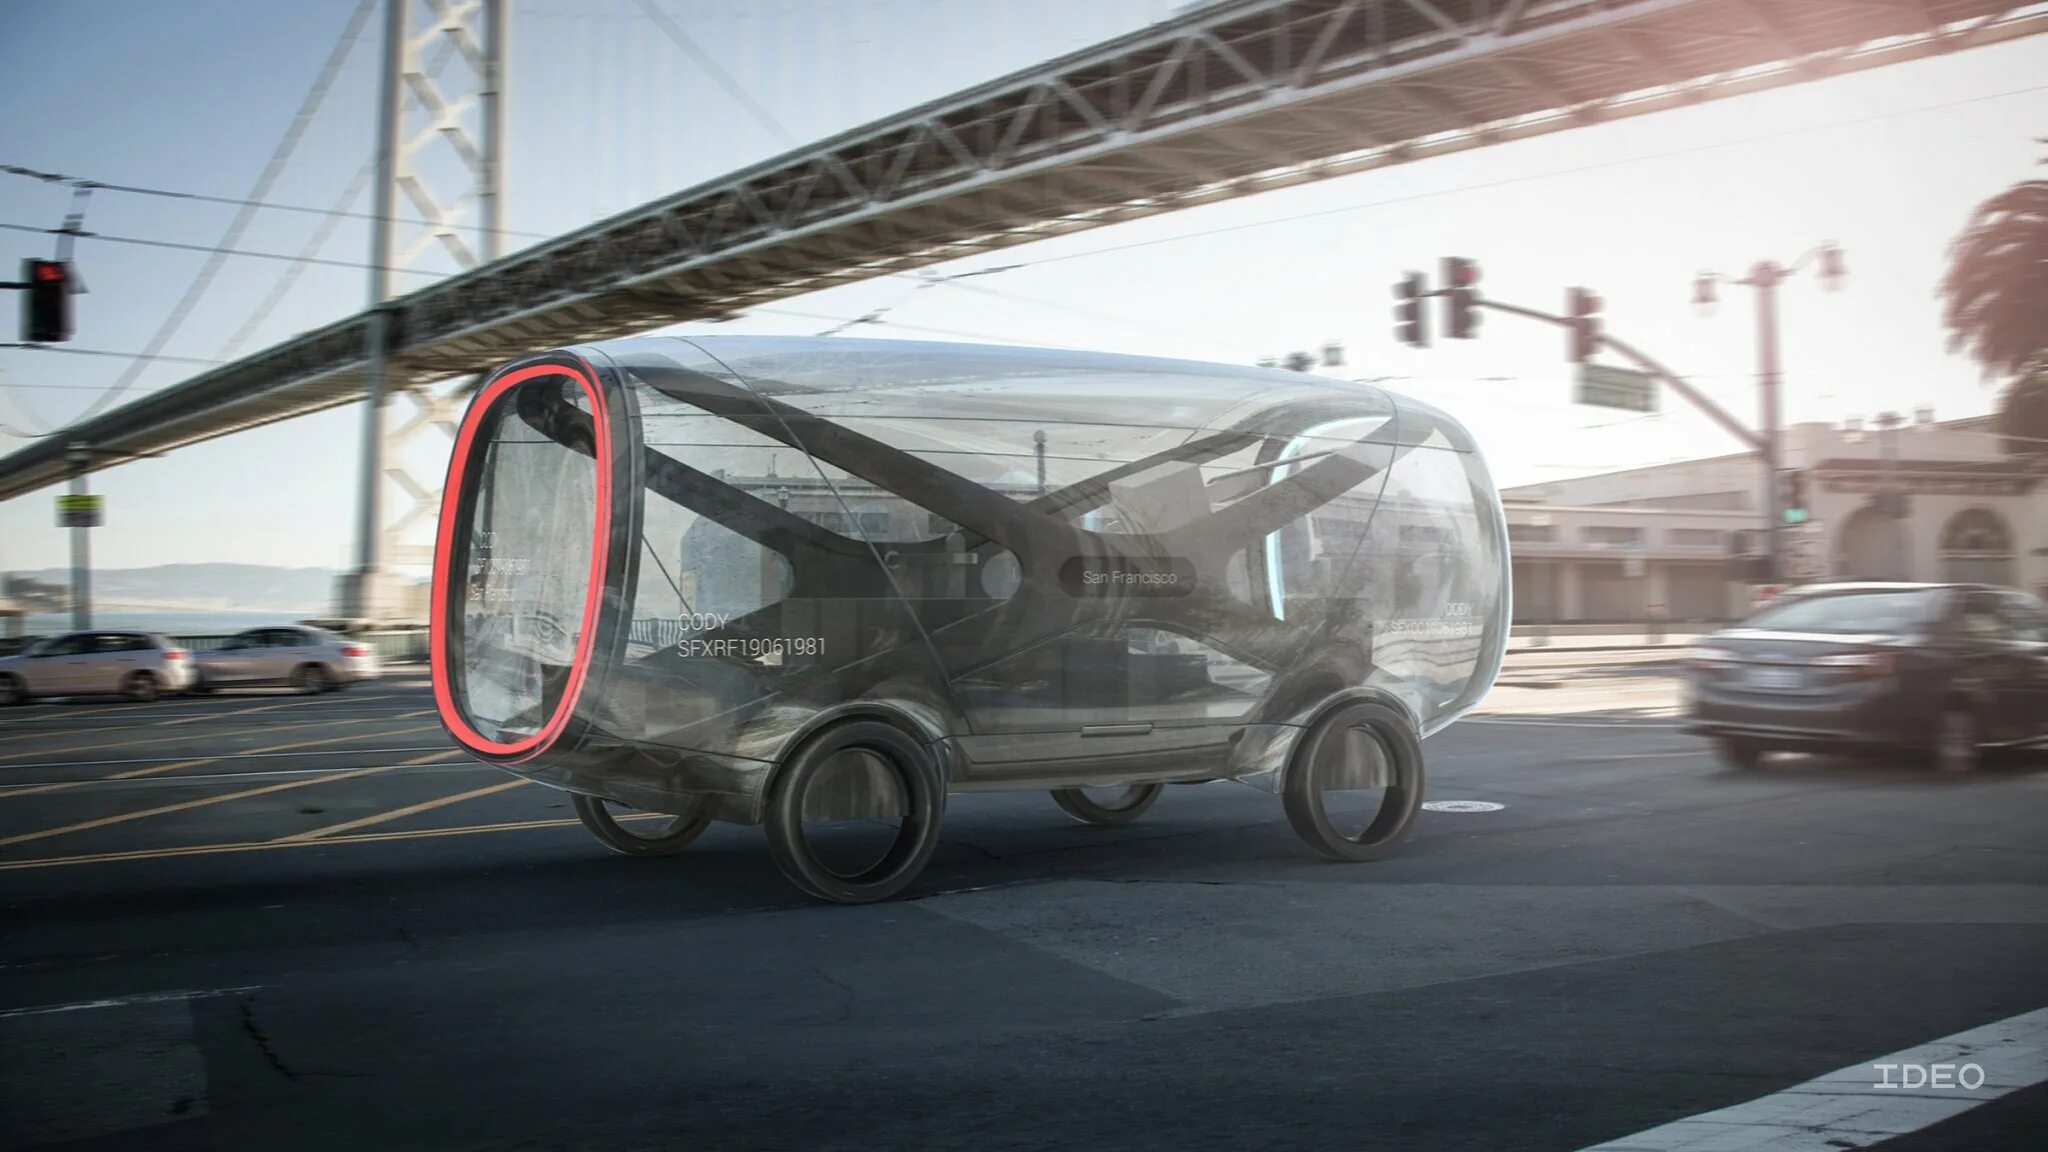 Прозрачный грузовик. Прозрачная машина. Транспорт будущего. Транспорт будущего концепт. Машины через 100 лет.